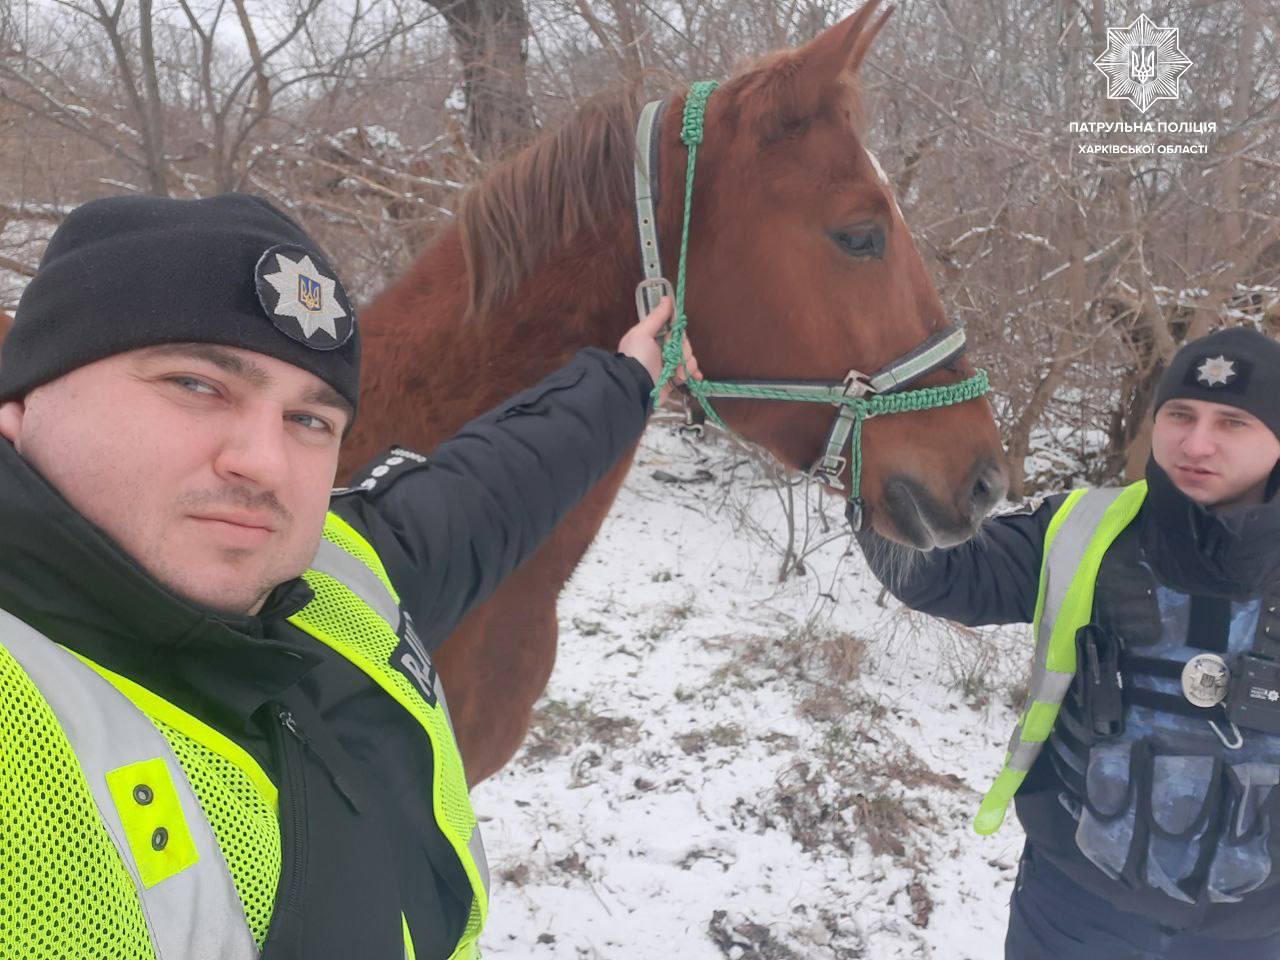 Новини Харкова: патрульні зупинили коня-згубу